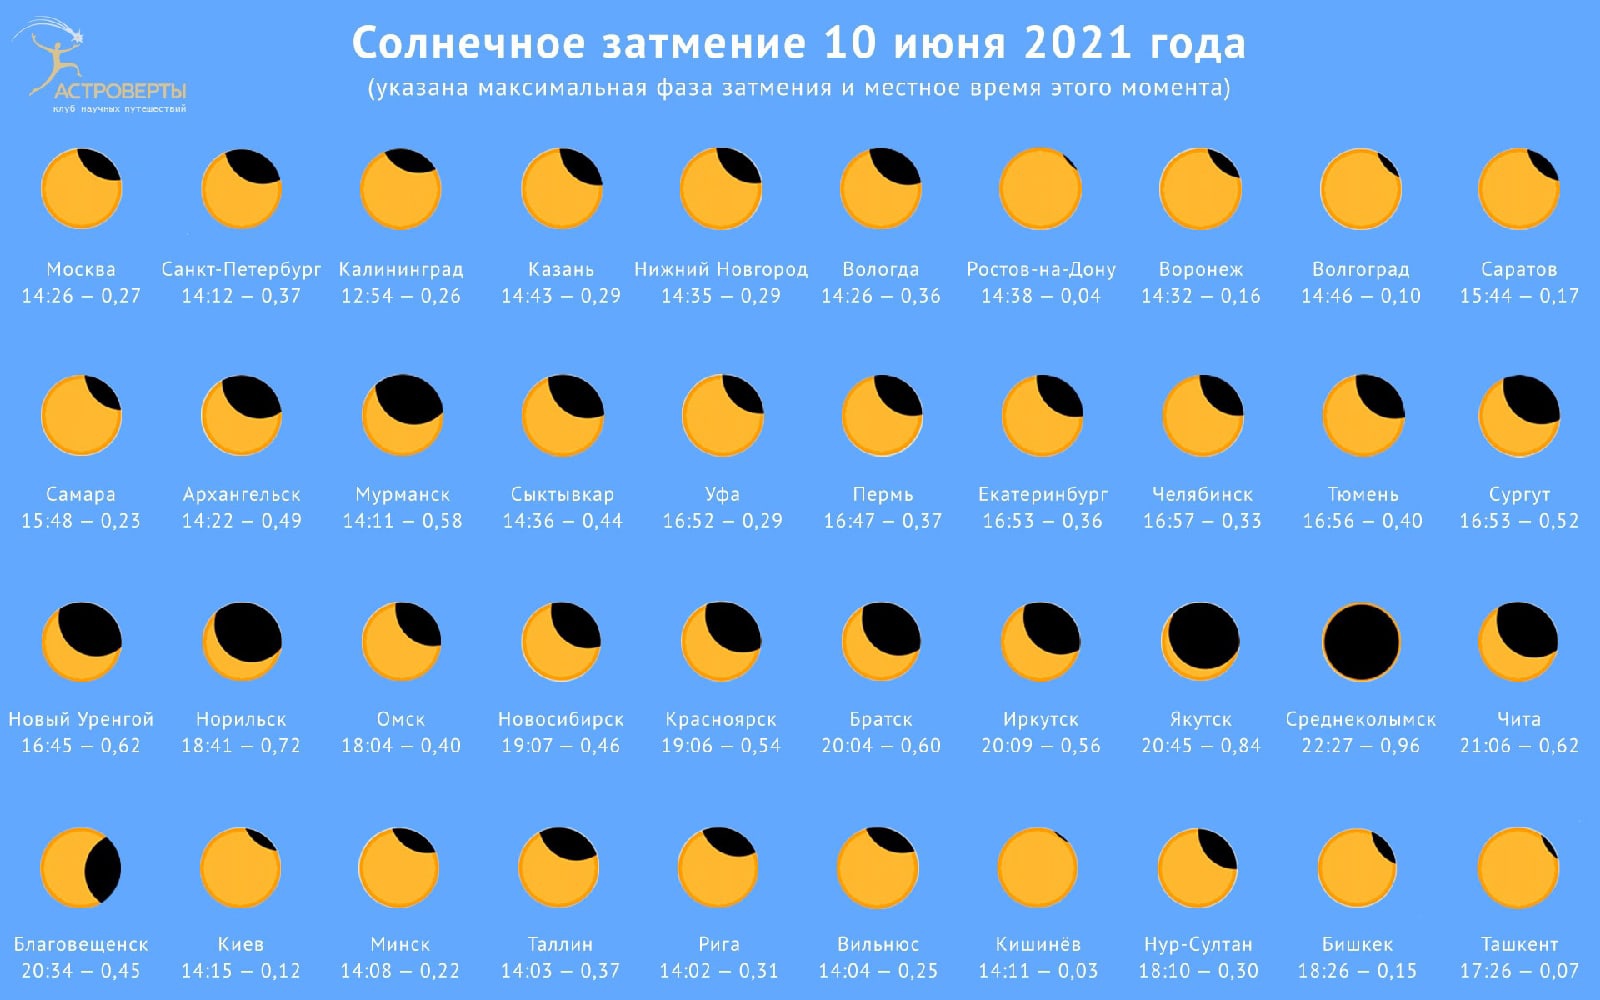 Солнечное затмение 10 июня 2021 в Новосибирске